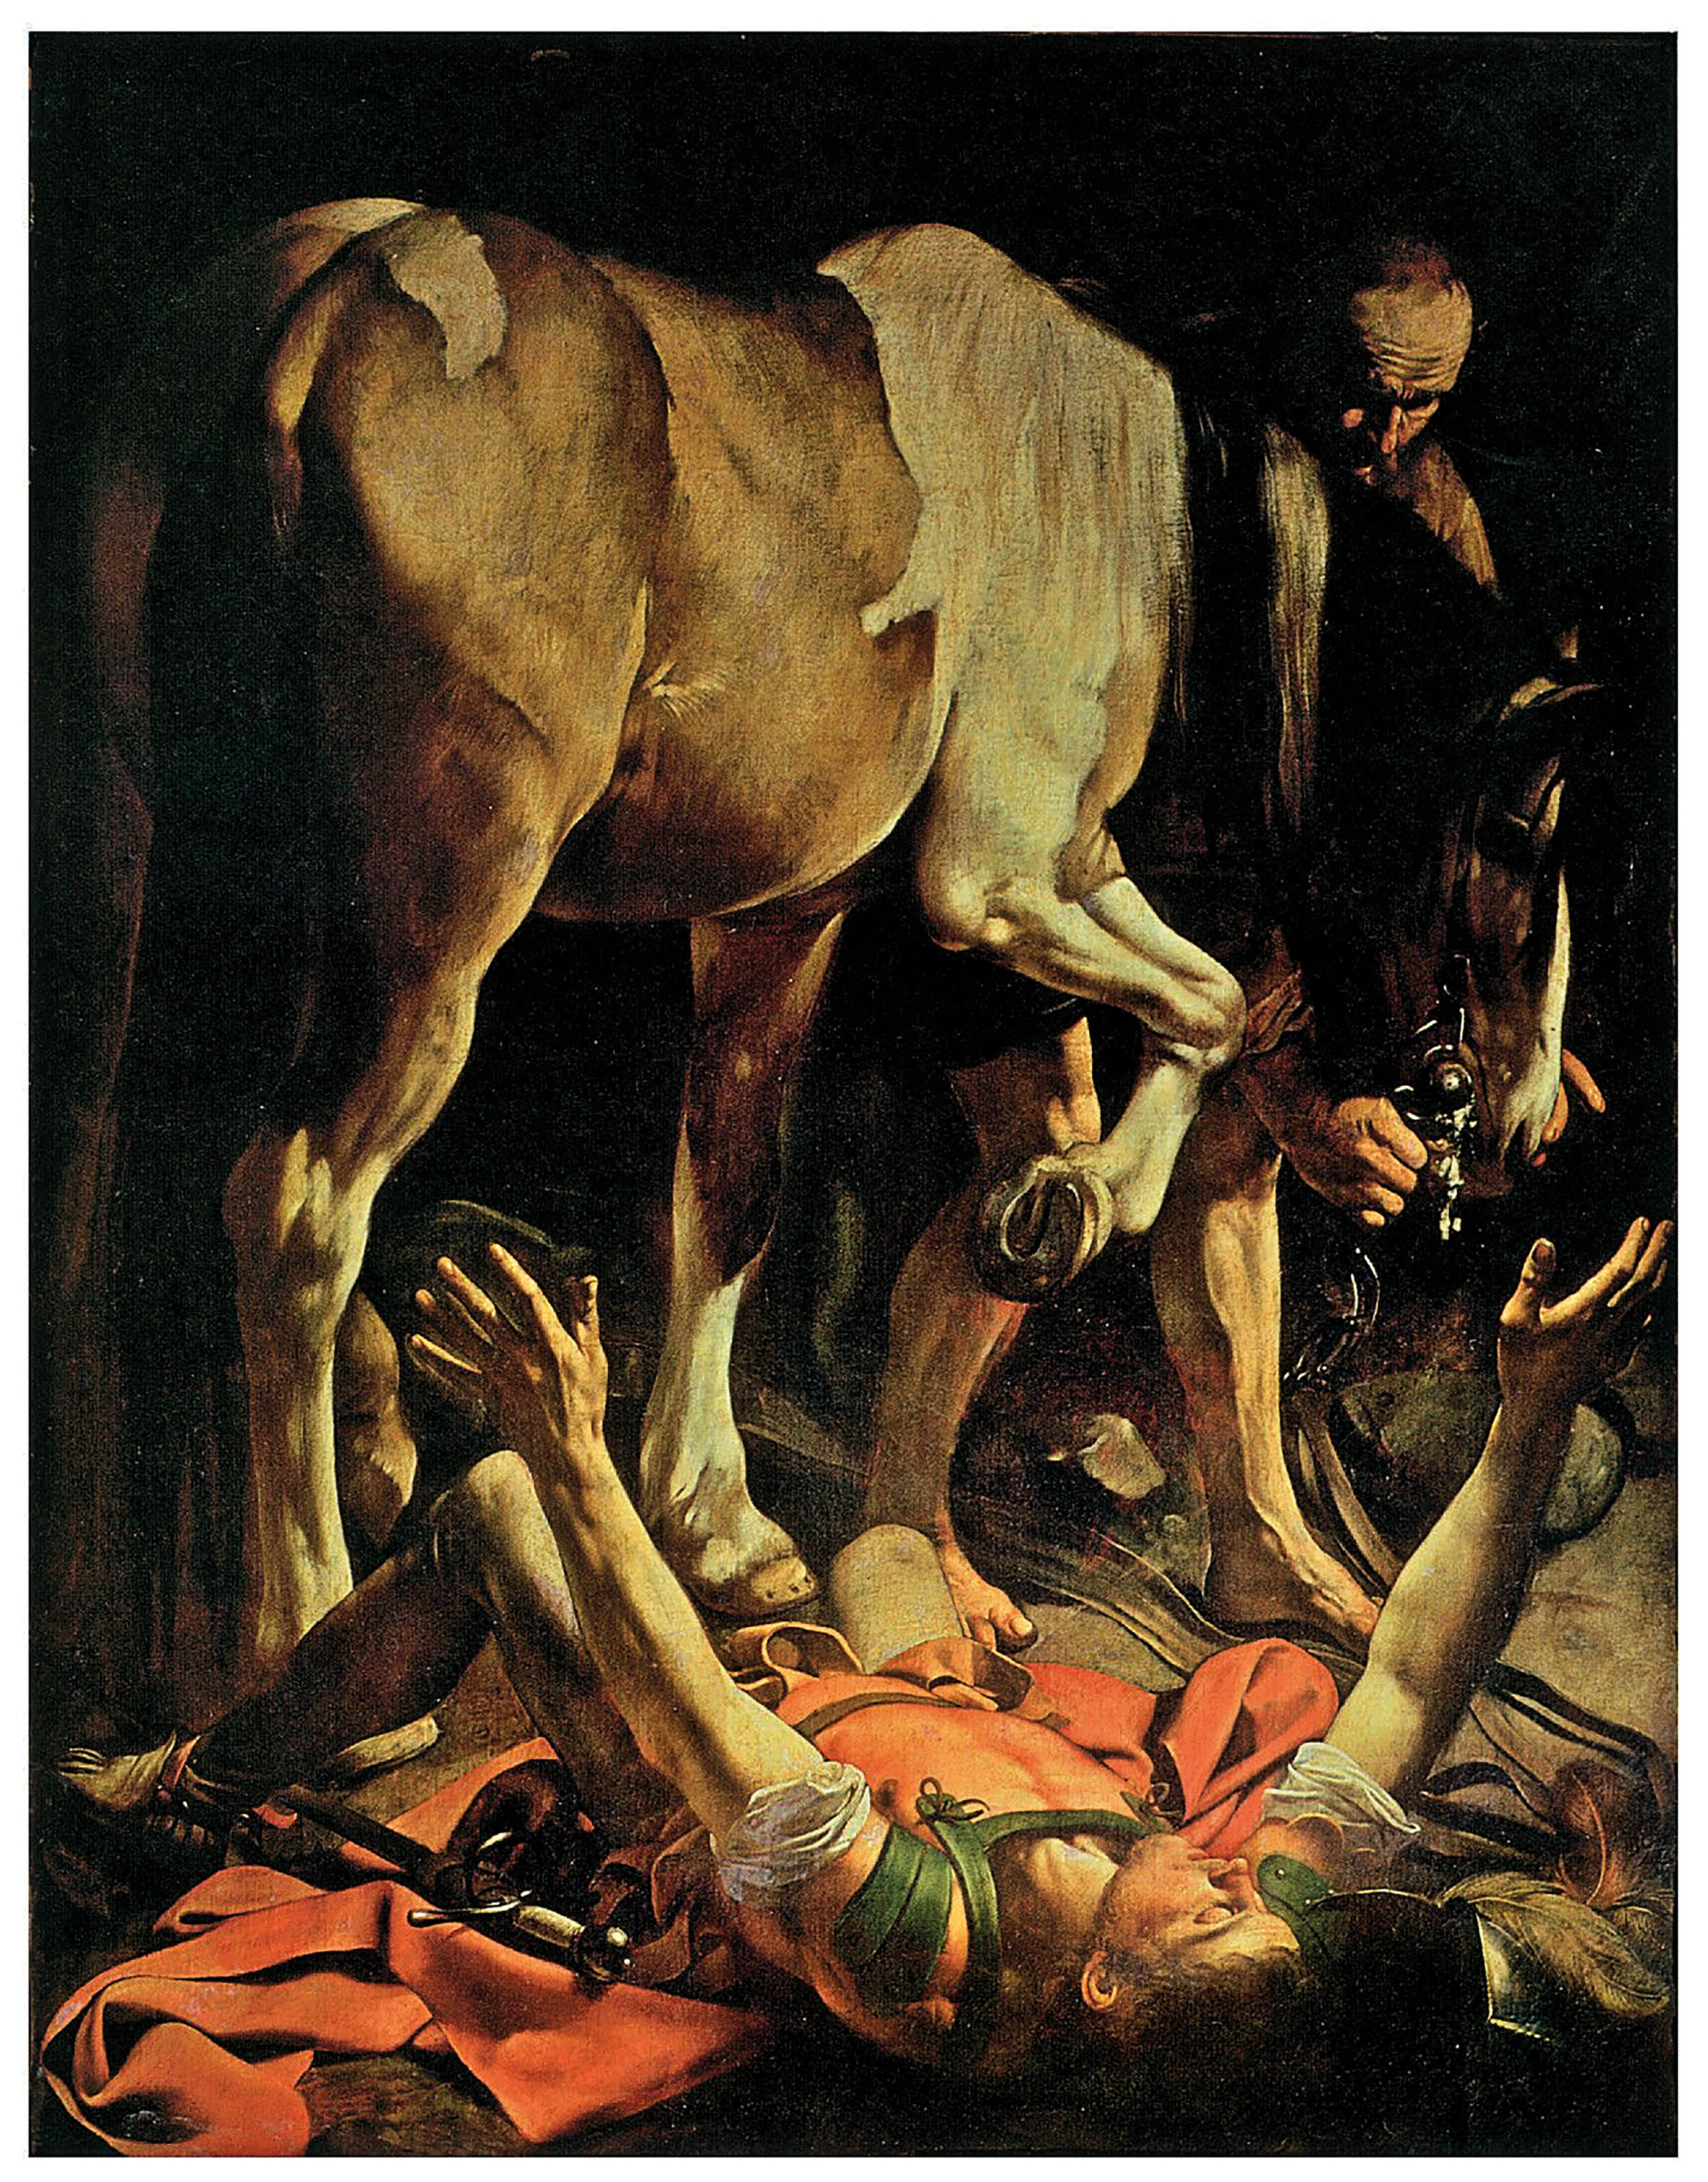 Veel kunstenaars, zoals hier Caravaggio, hebben de dramatiek van Paulus’ roeping versterkt door hem van een paard te laten vallen. In de drie versies van het verhaal in de bijbel komt geen paard voor!